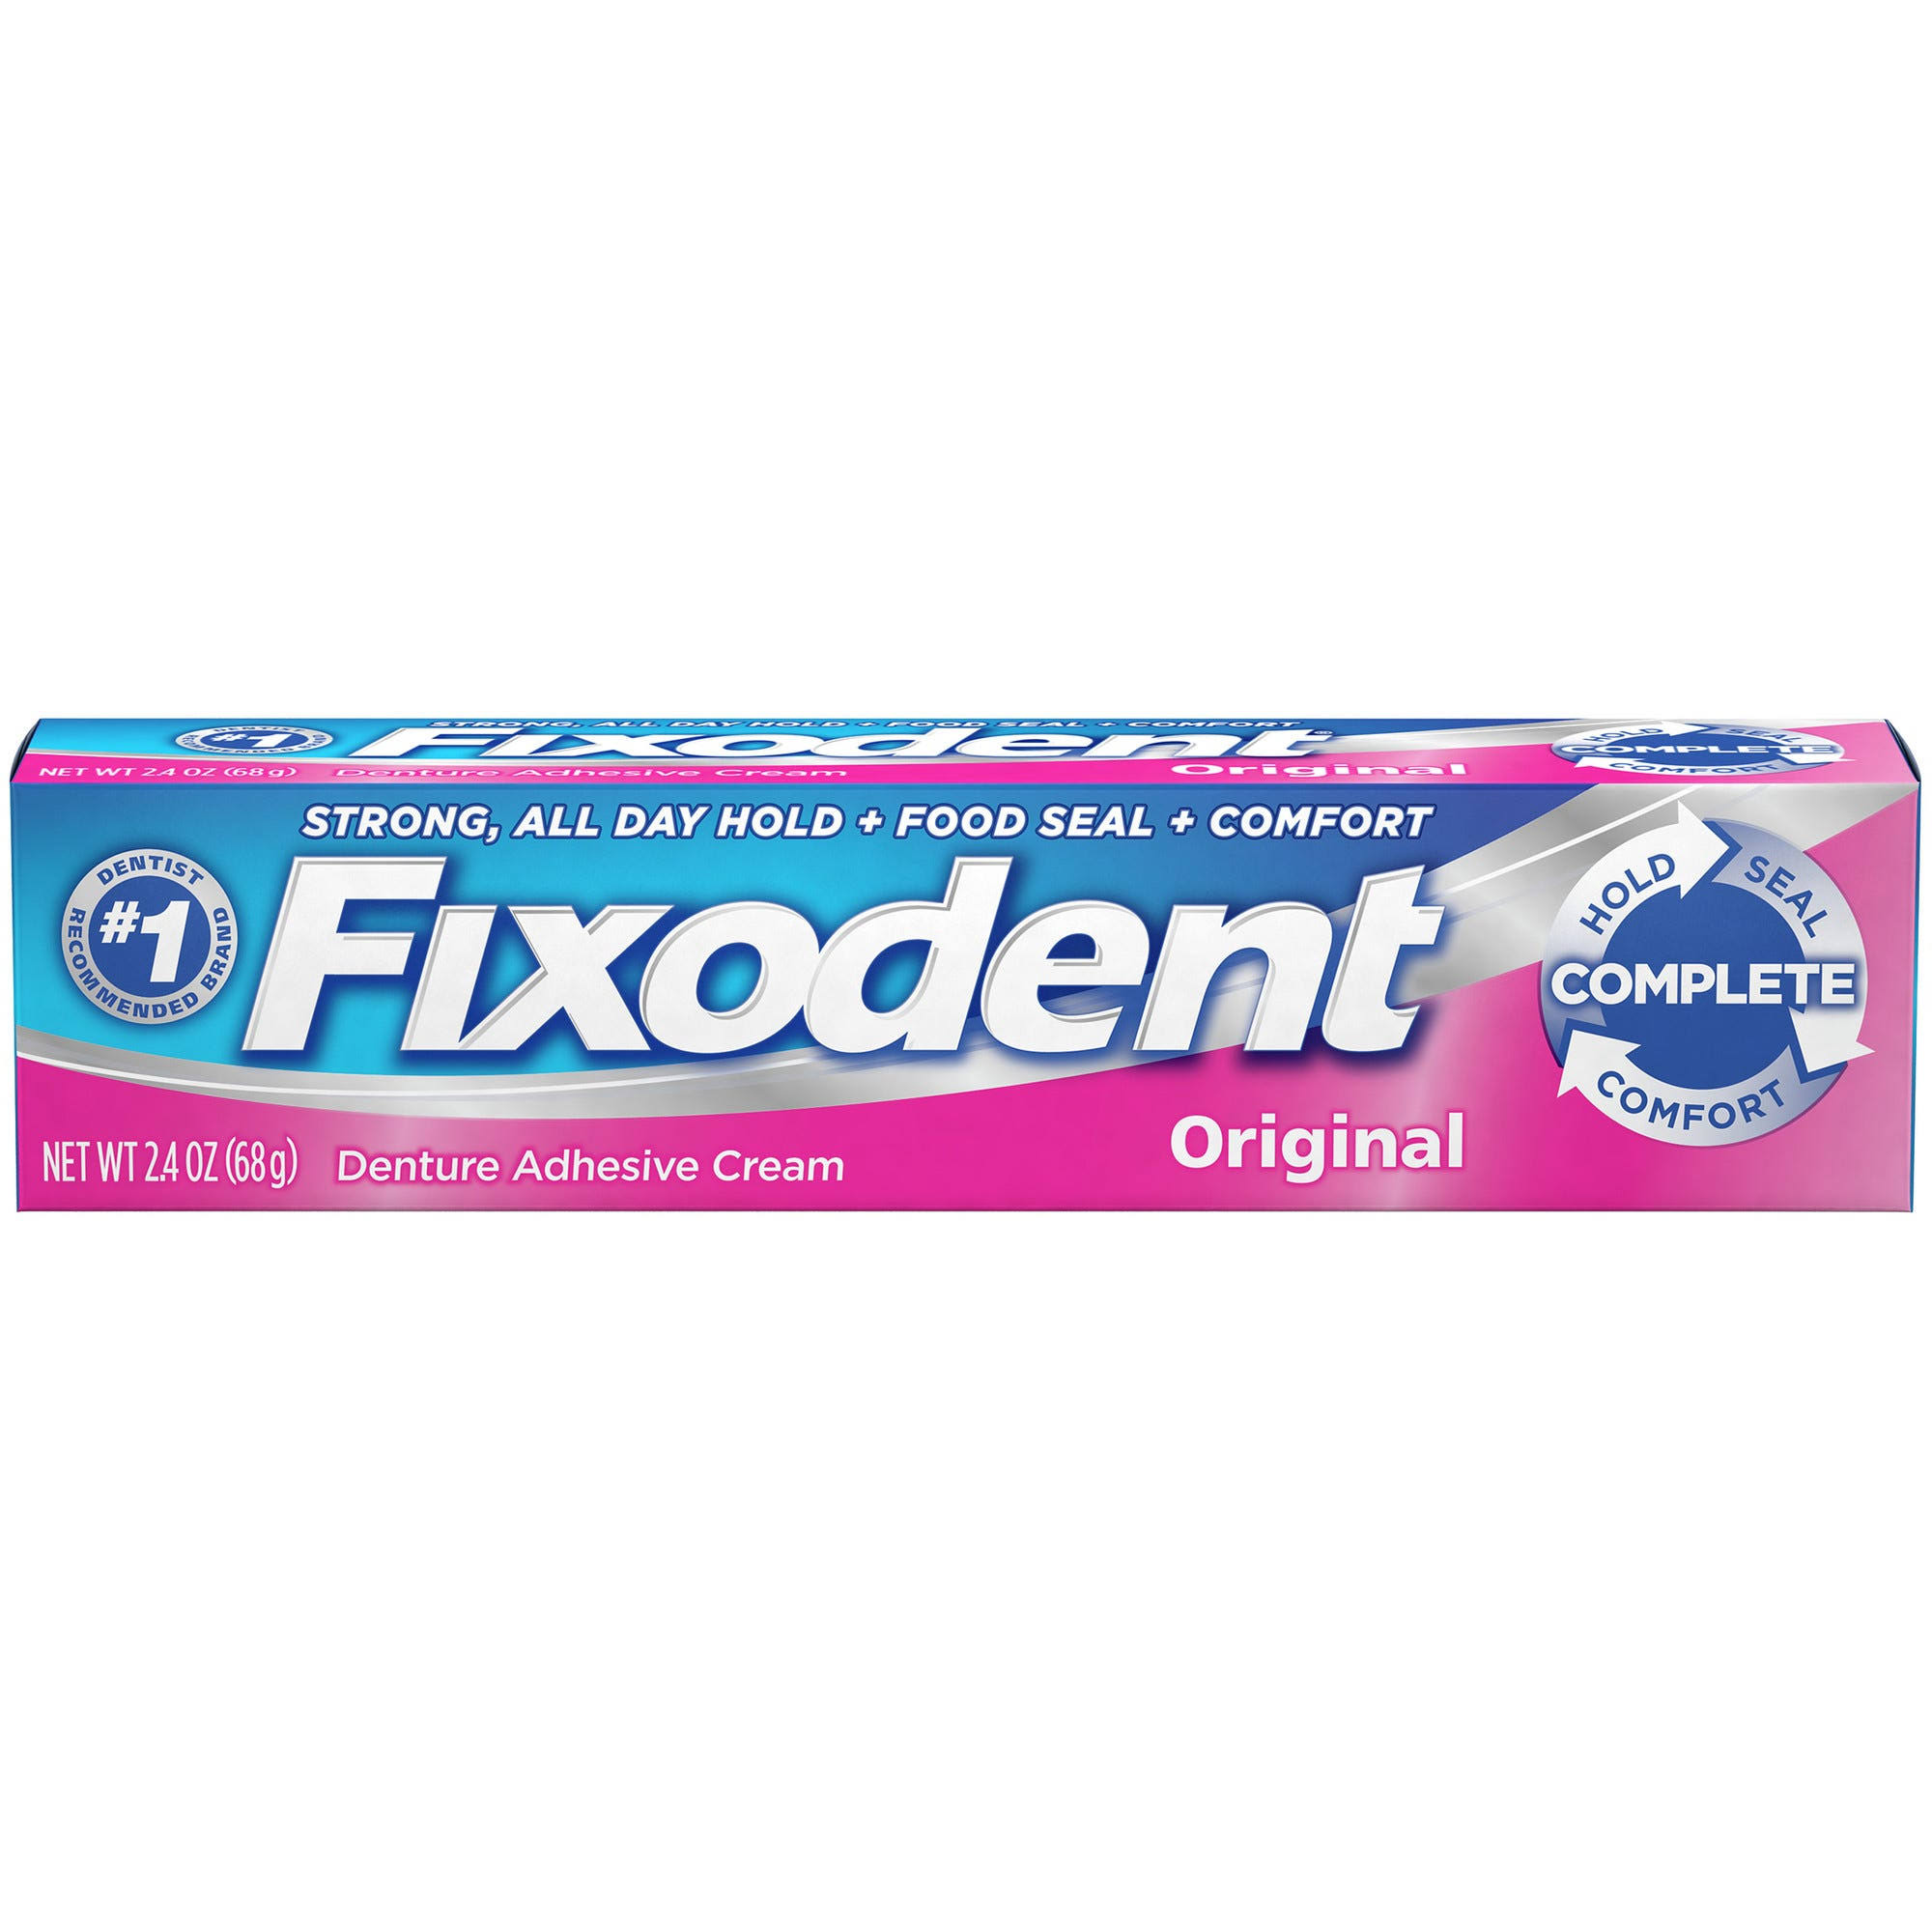 Fixodent Original Denture Adhesive Cream - 2.4oz